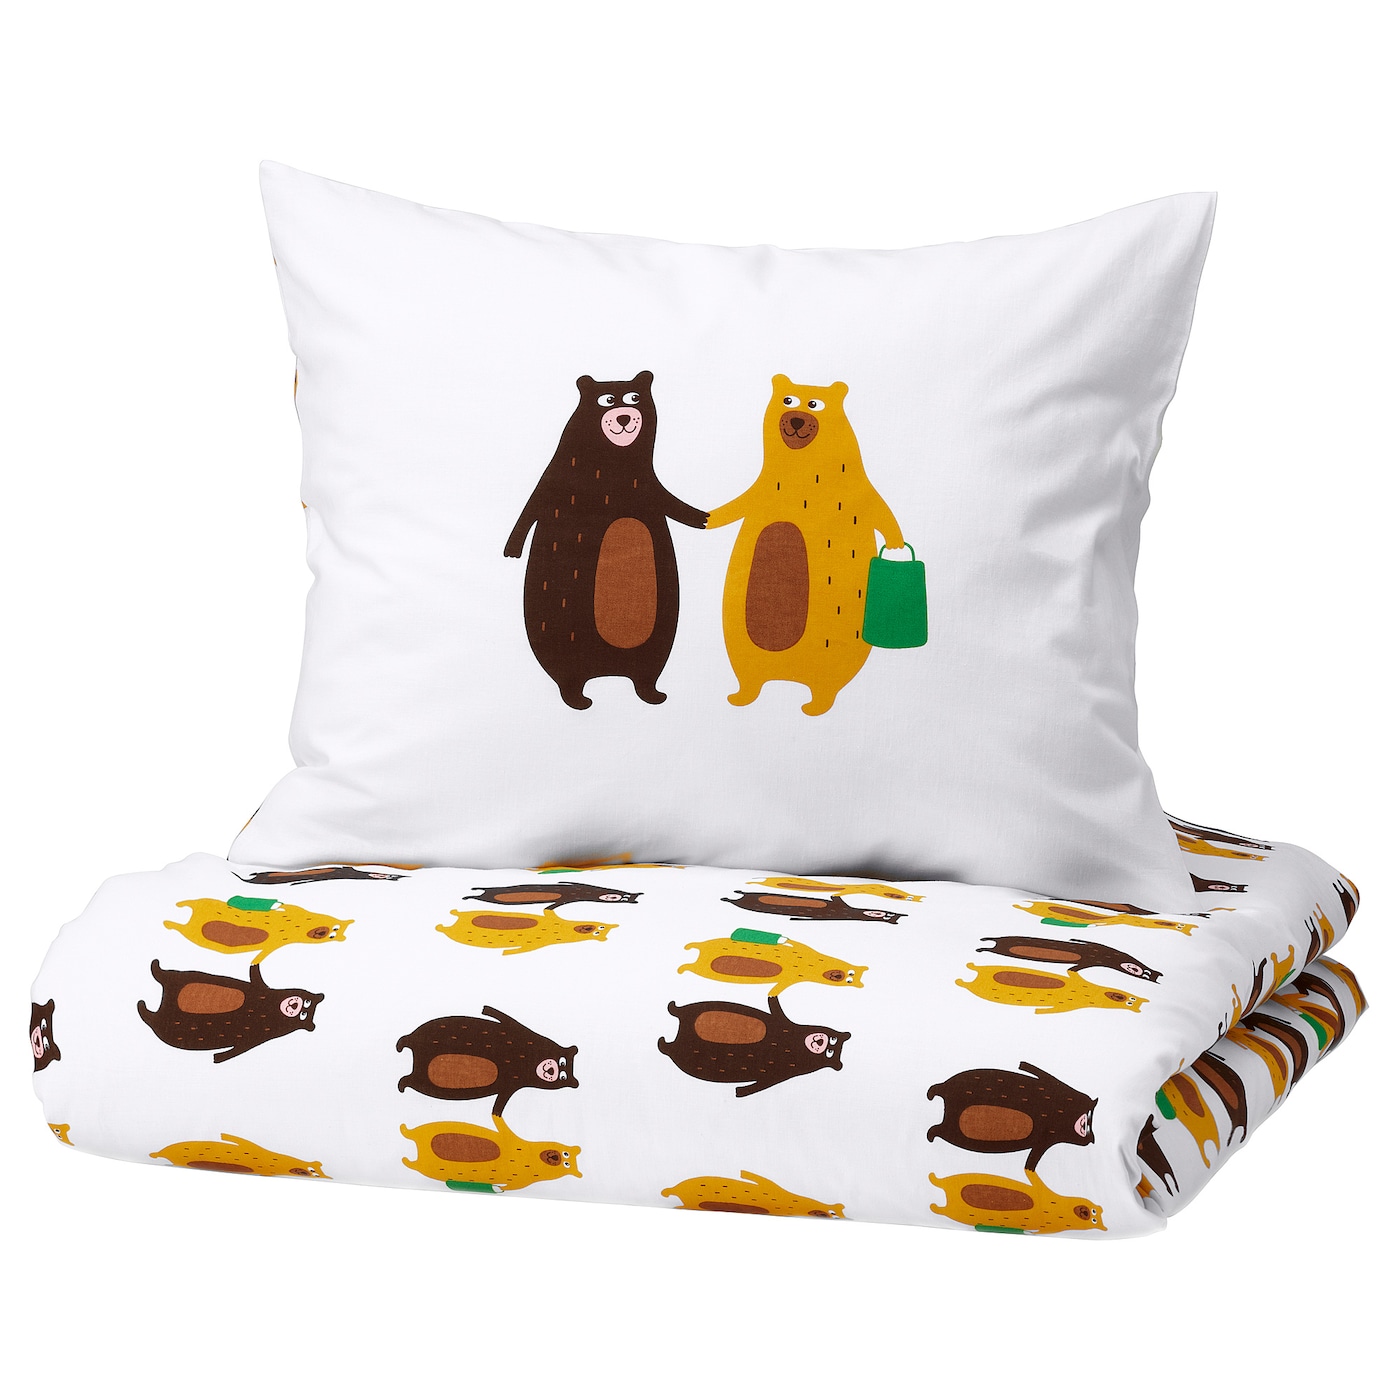 BRUMMIG - poszwa na kołdrę i poszewka wzór niedźwiedzie żółty/brązowy